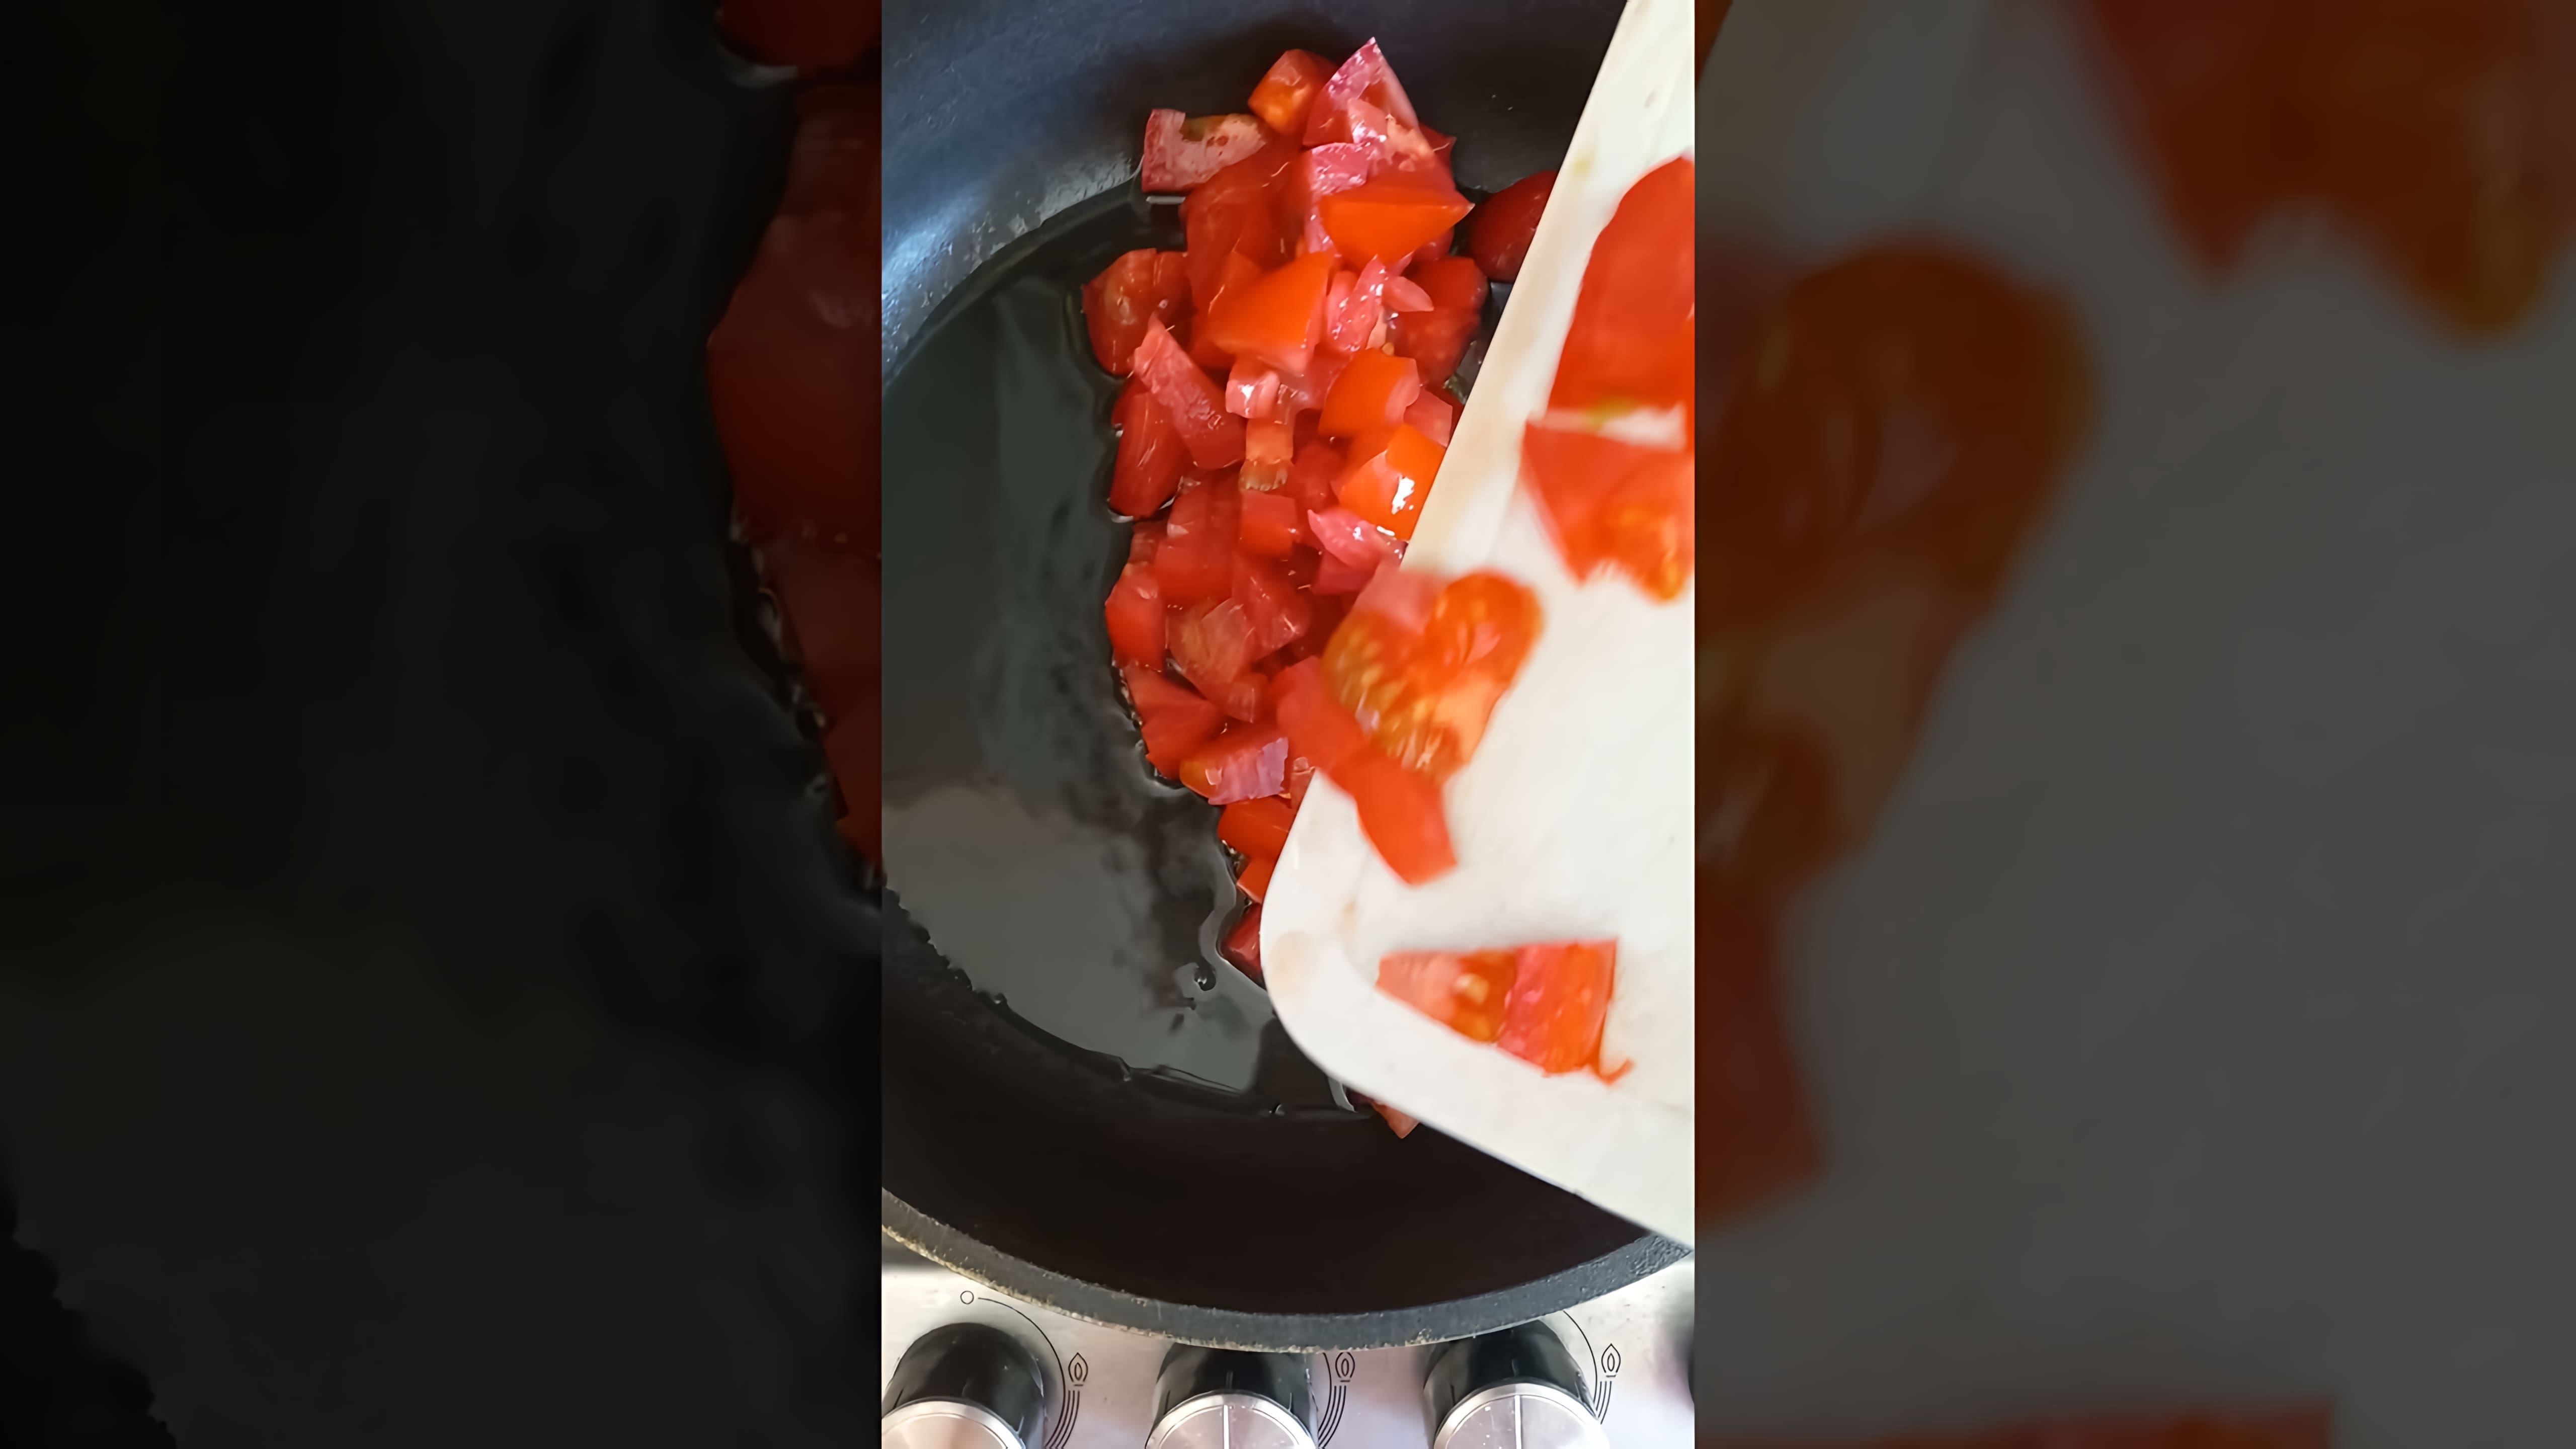 Яичница с помидорами - это взрыв вкуса! В этом видео я покажу вам, как приготовить яичницу с помидорами, чтобы она была не просто вкусной, но и выглядела как настоящая бомба